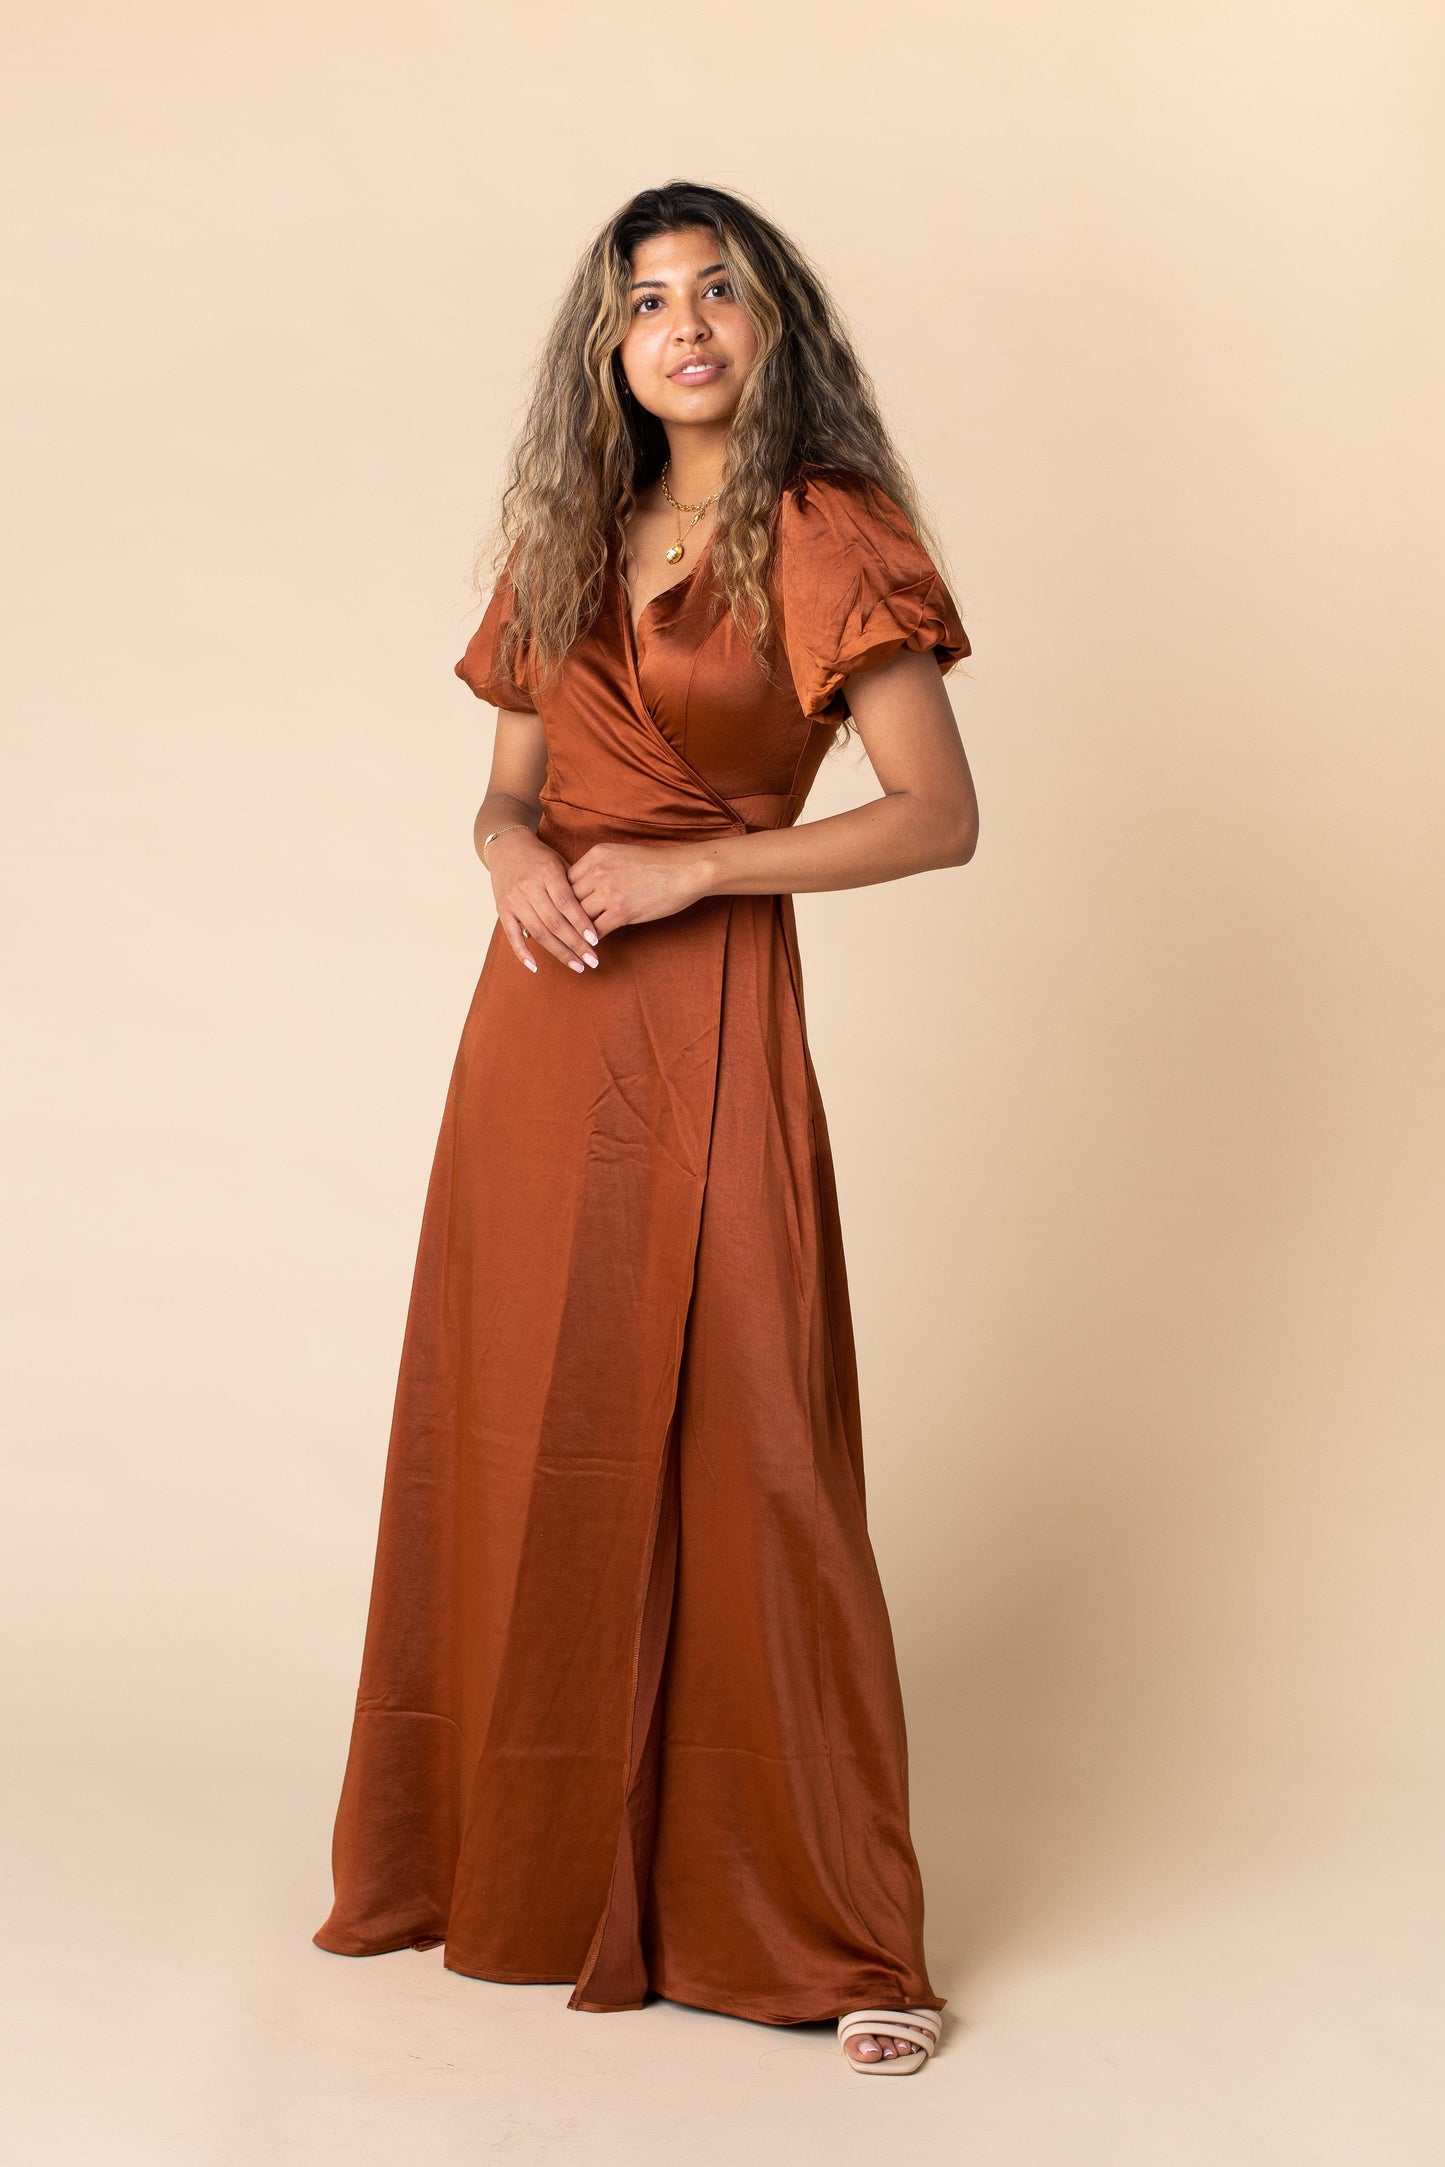 Ava Satin Dress-Rust WOMEN'S DRESS Arbor Rust L 